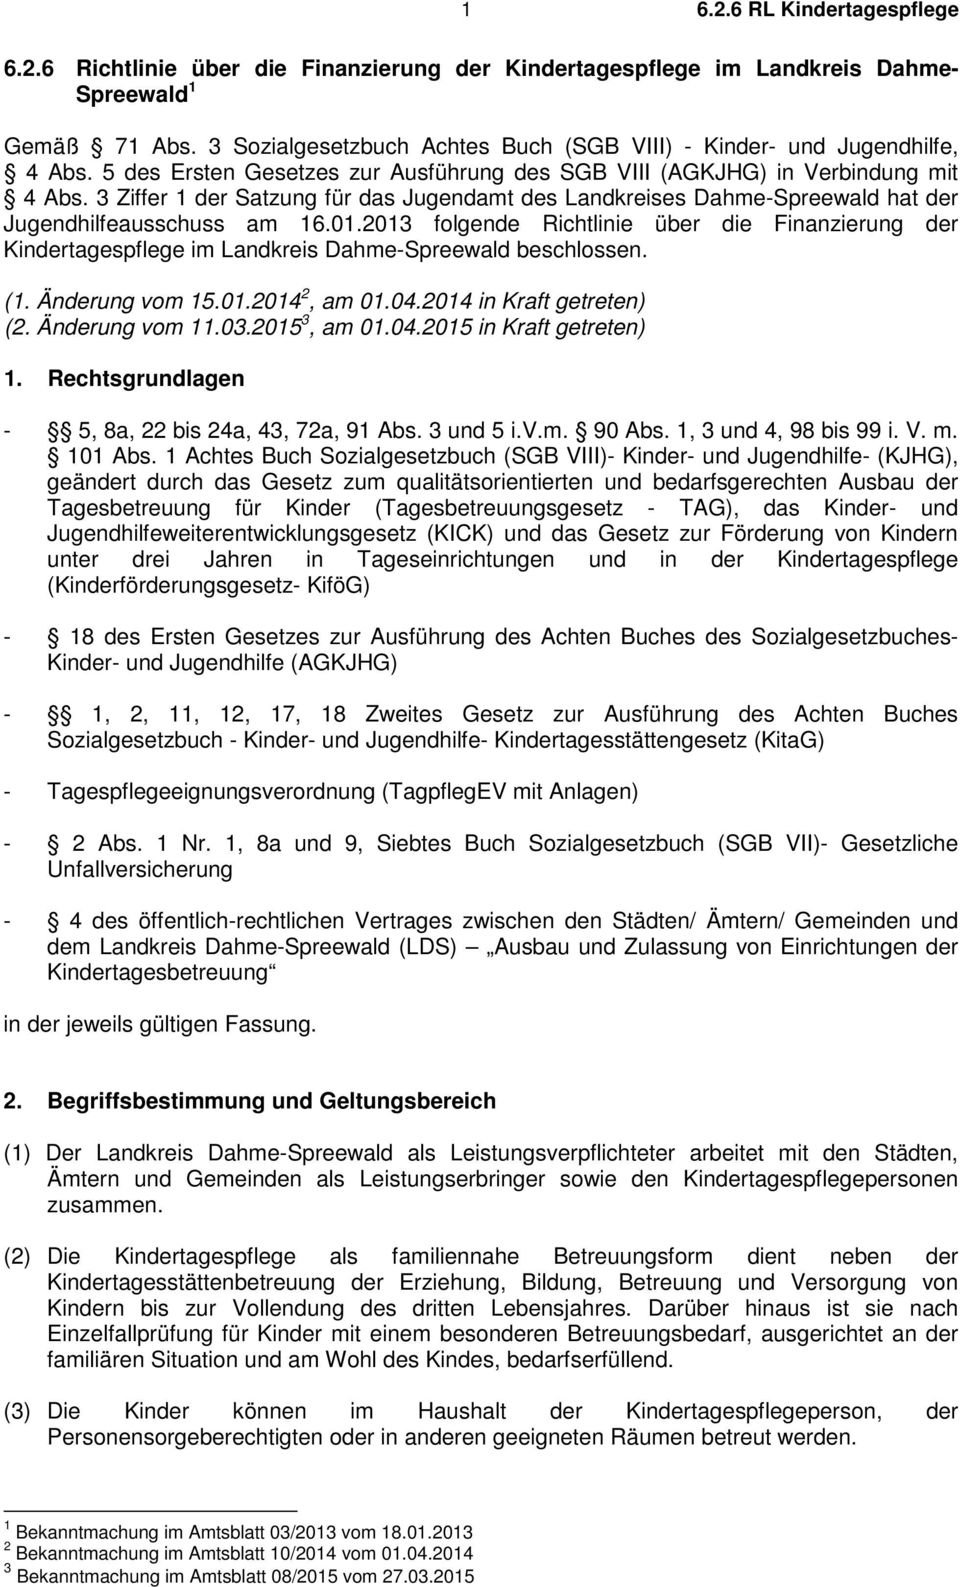 3 Ziffer 1 der Satzung für das Jugendamt des Landkreises Dahme-Spreewald hat der Jugendhilfeausschuss am 16.01.